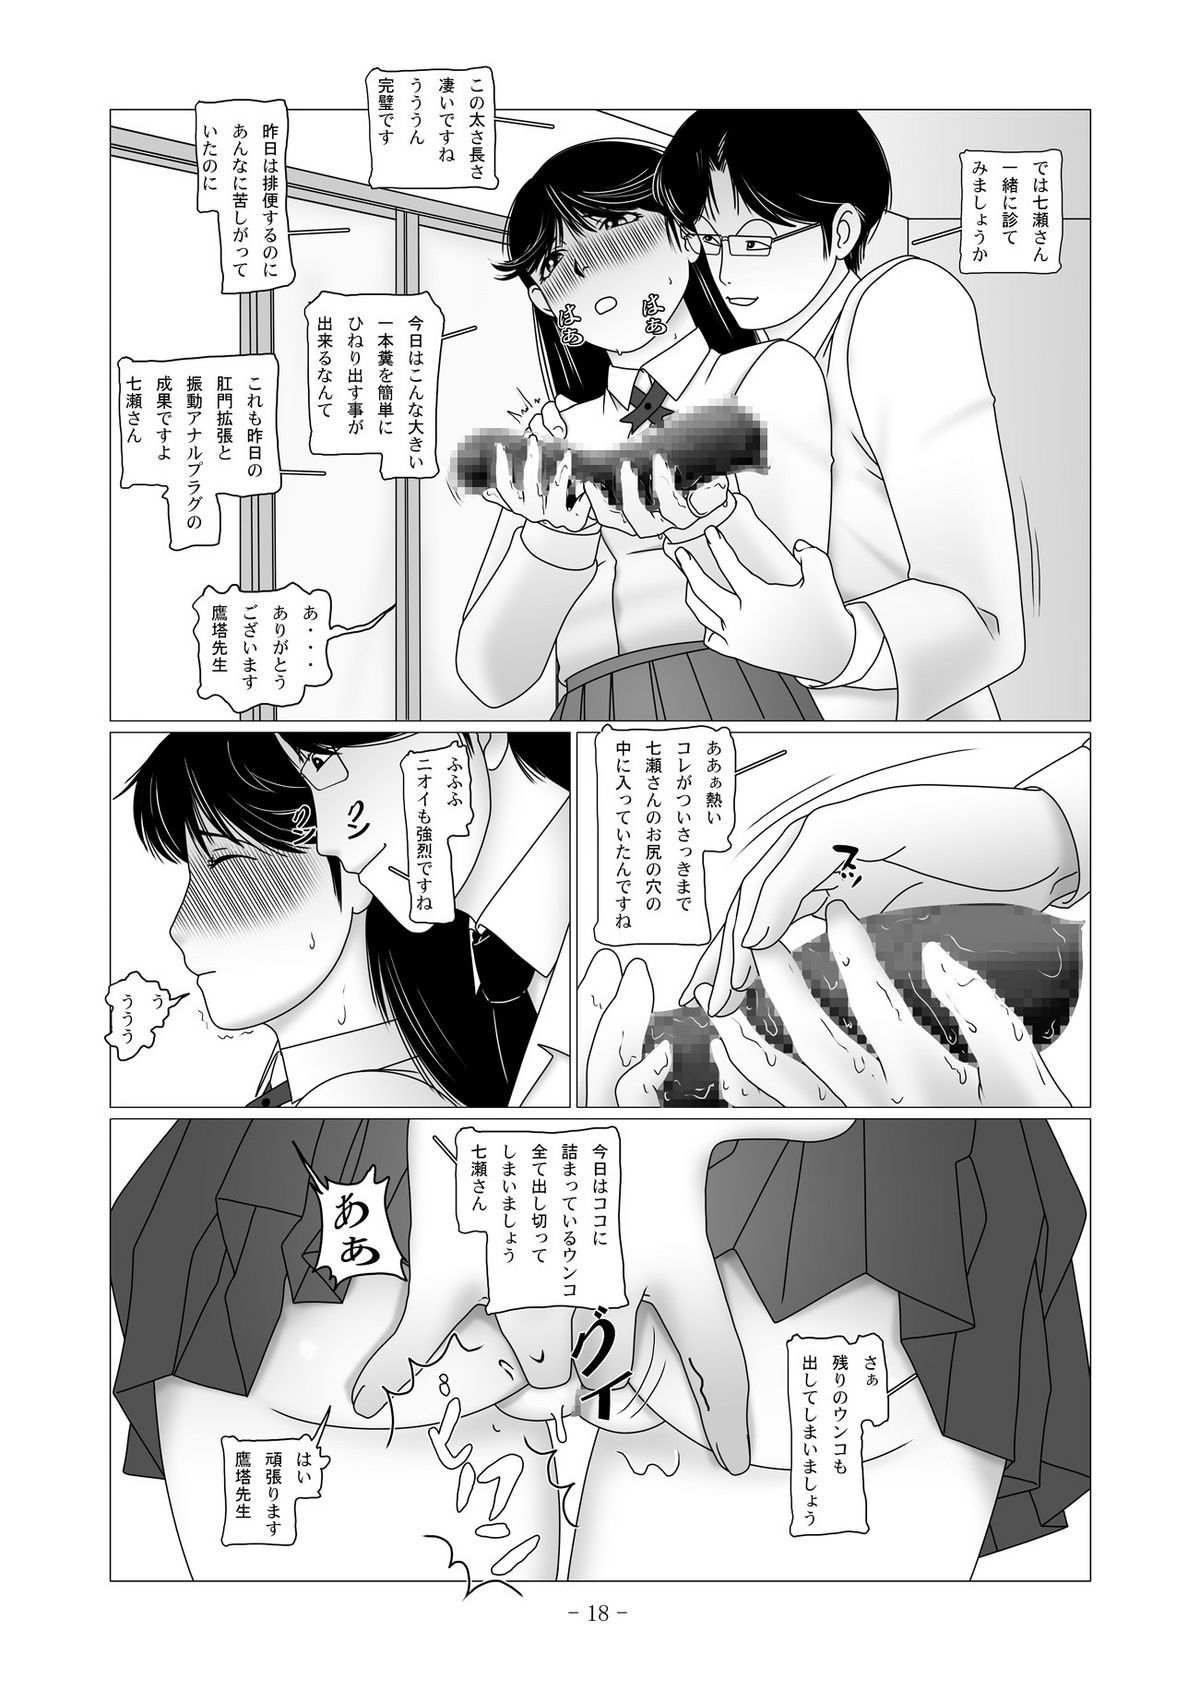 [nebira71] Nanase Miyuki no Choukyoubo File 02 - Koumon Kakuchou Dappun Hen (Kindaichi Shounen no Jikenbo) page 43 full